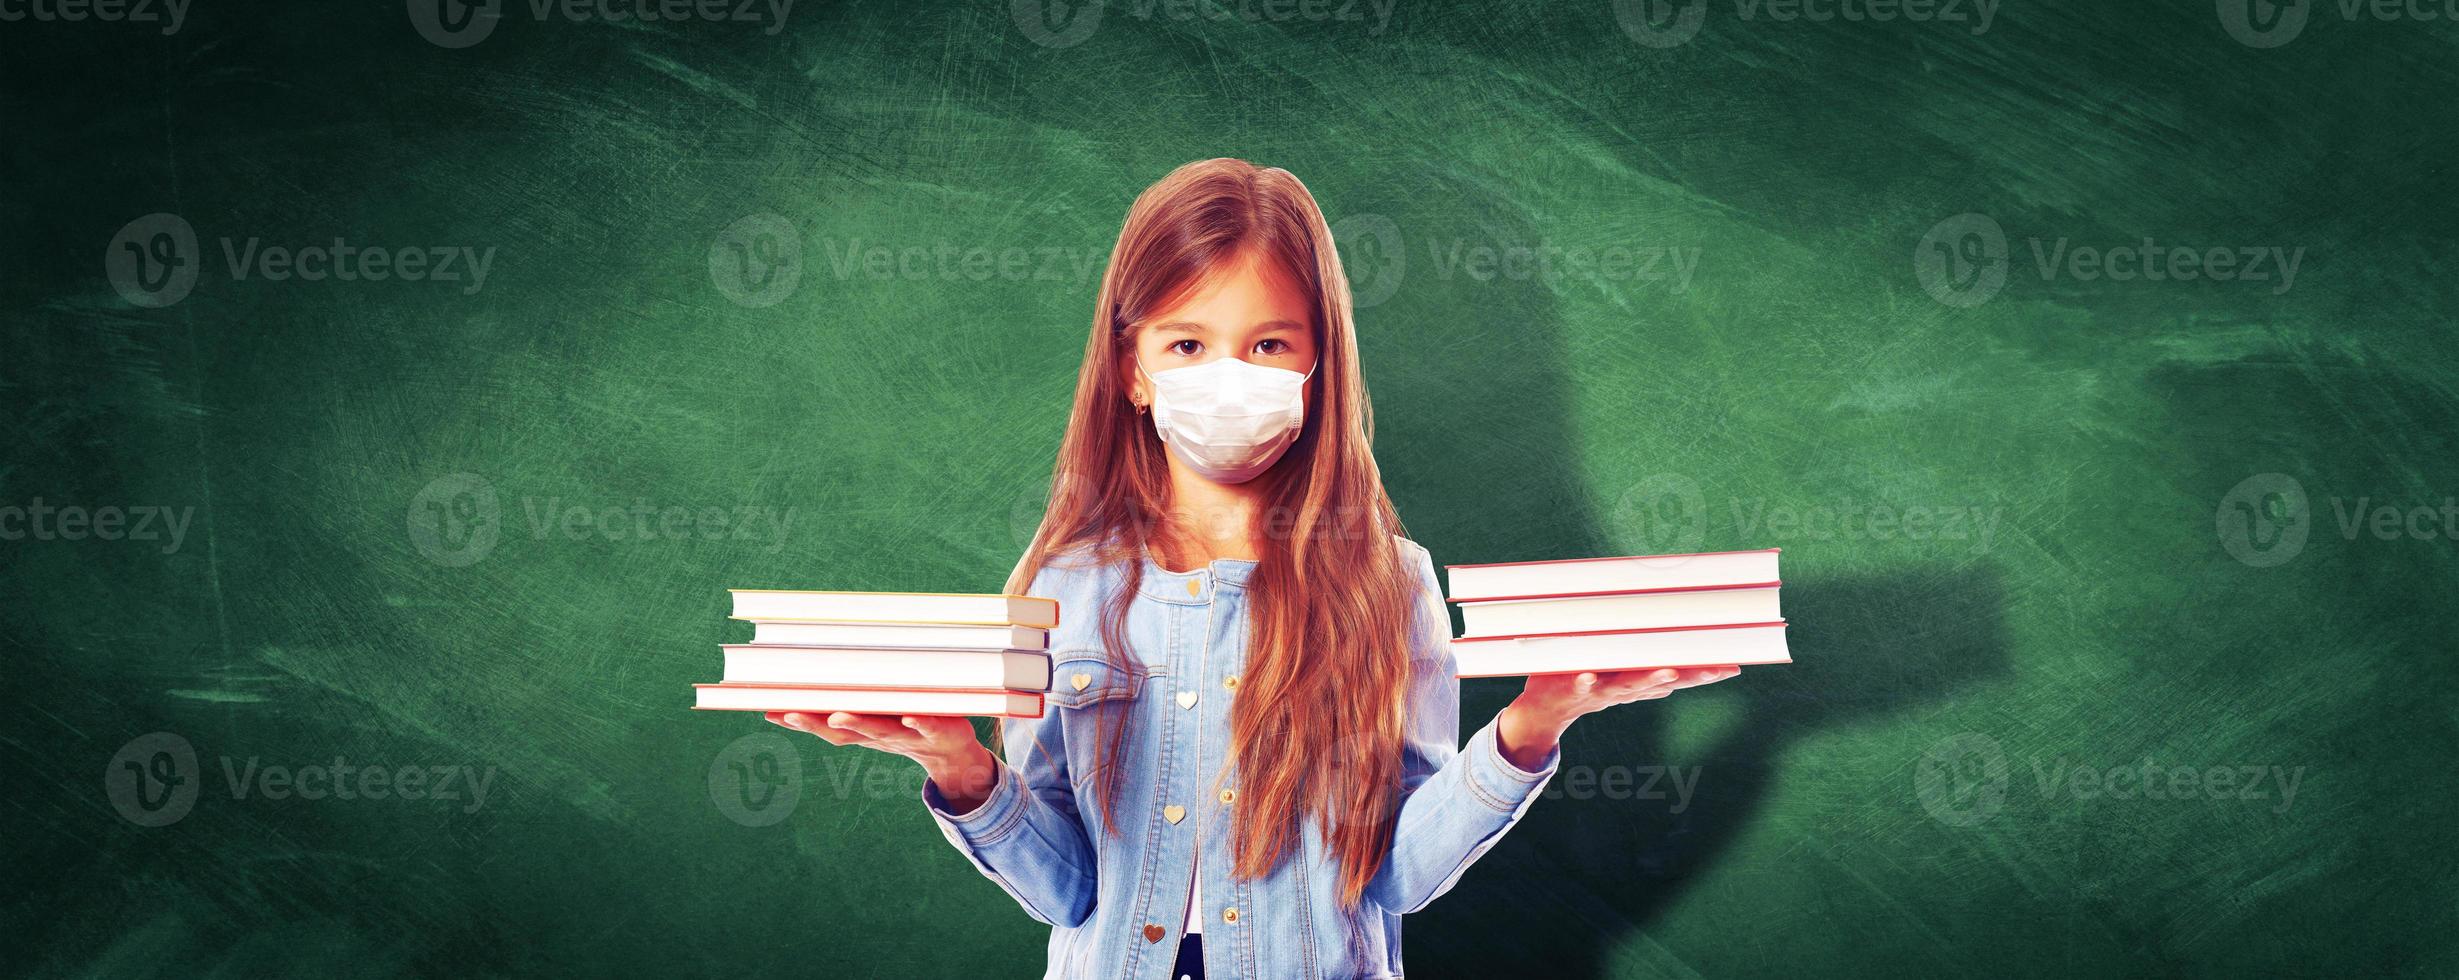 giovane ragazza con protezione maschera contro corona virus a scuola. foto